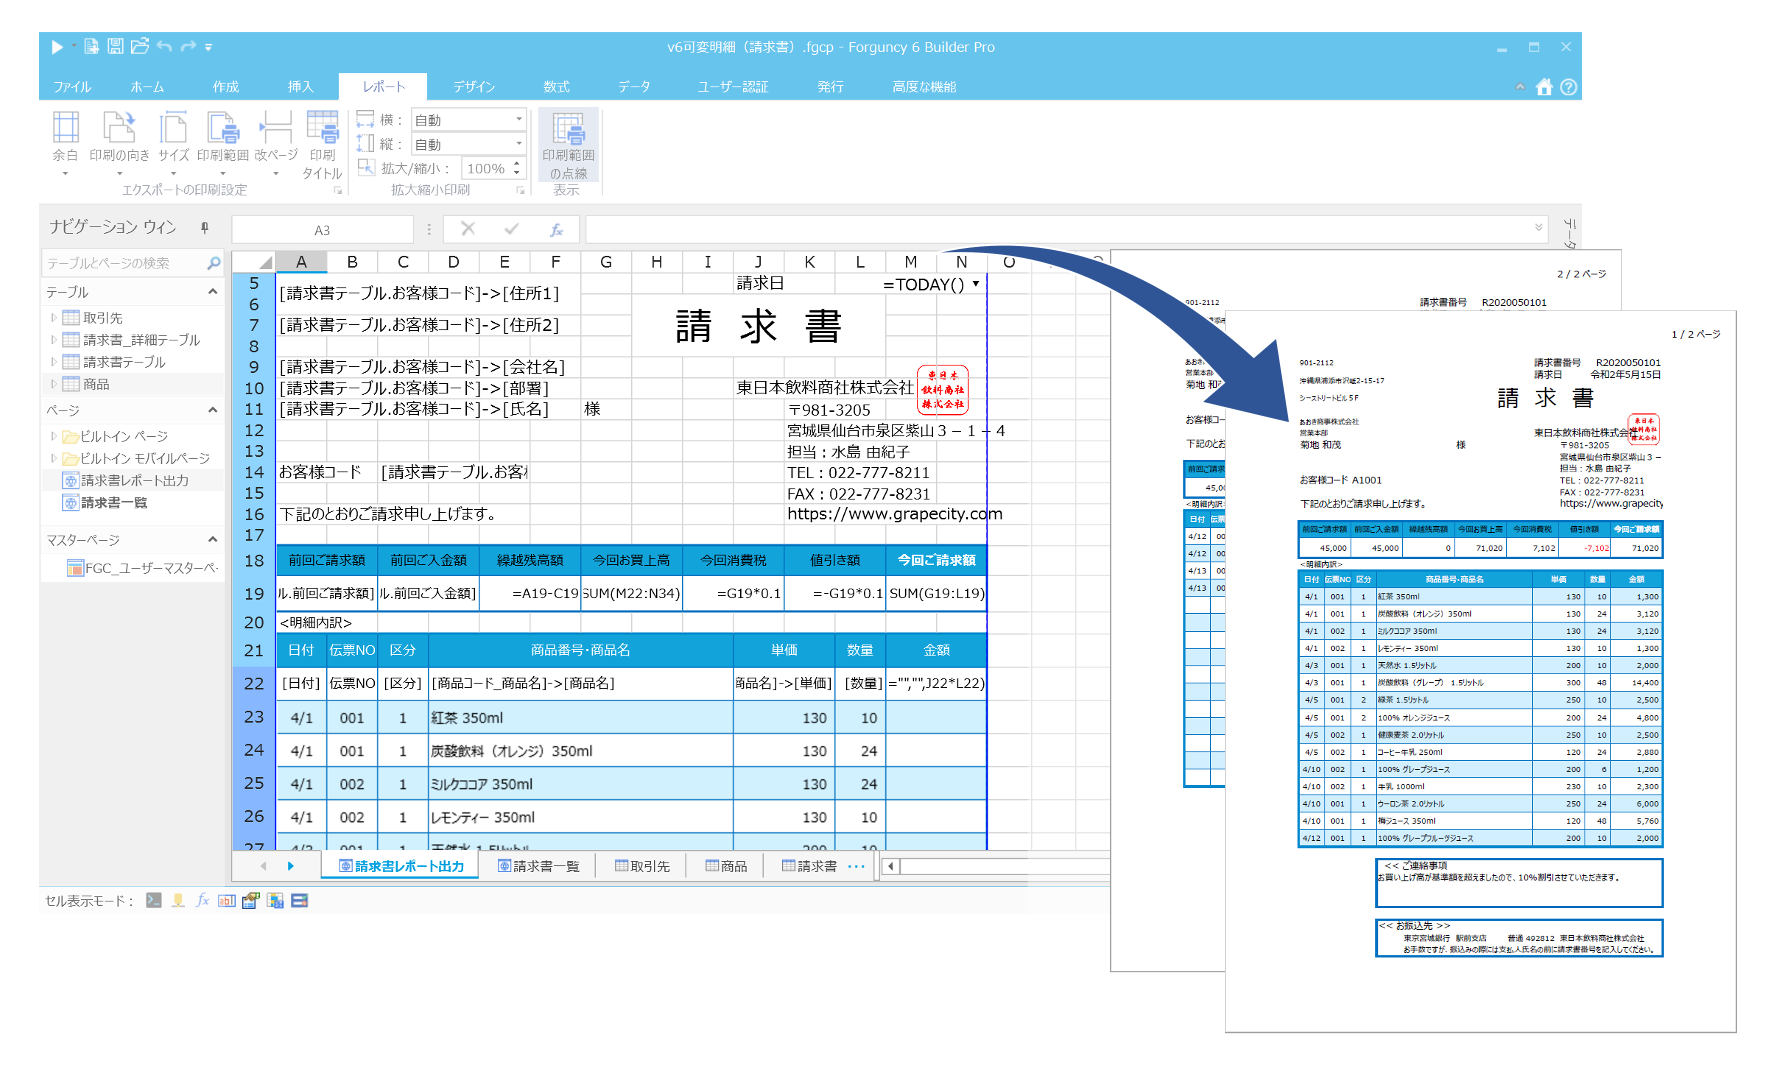 Excel Access業務をwebシステム化 多様な帳票レイアウトも作成できるforguncy 6発売 グレープシティ株式会社のプレスリリース